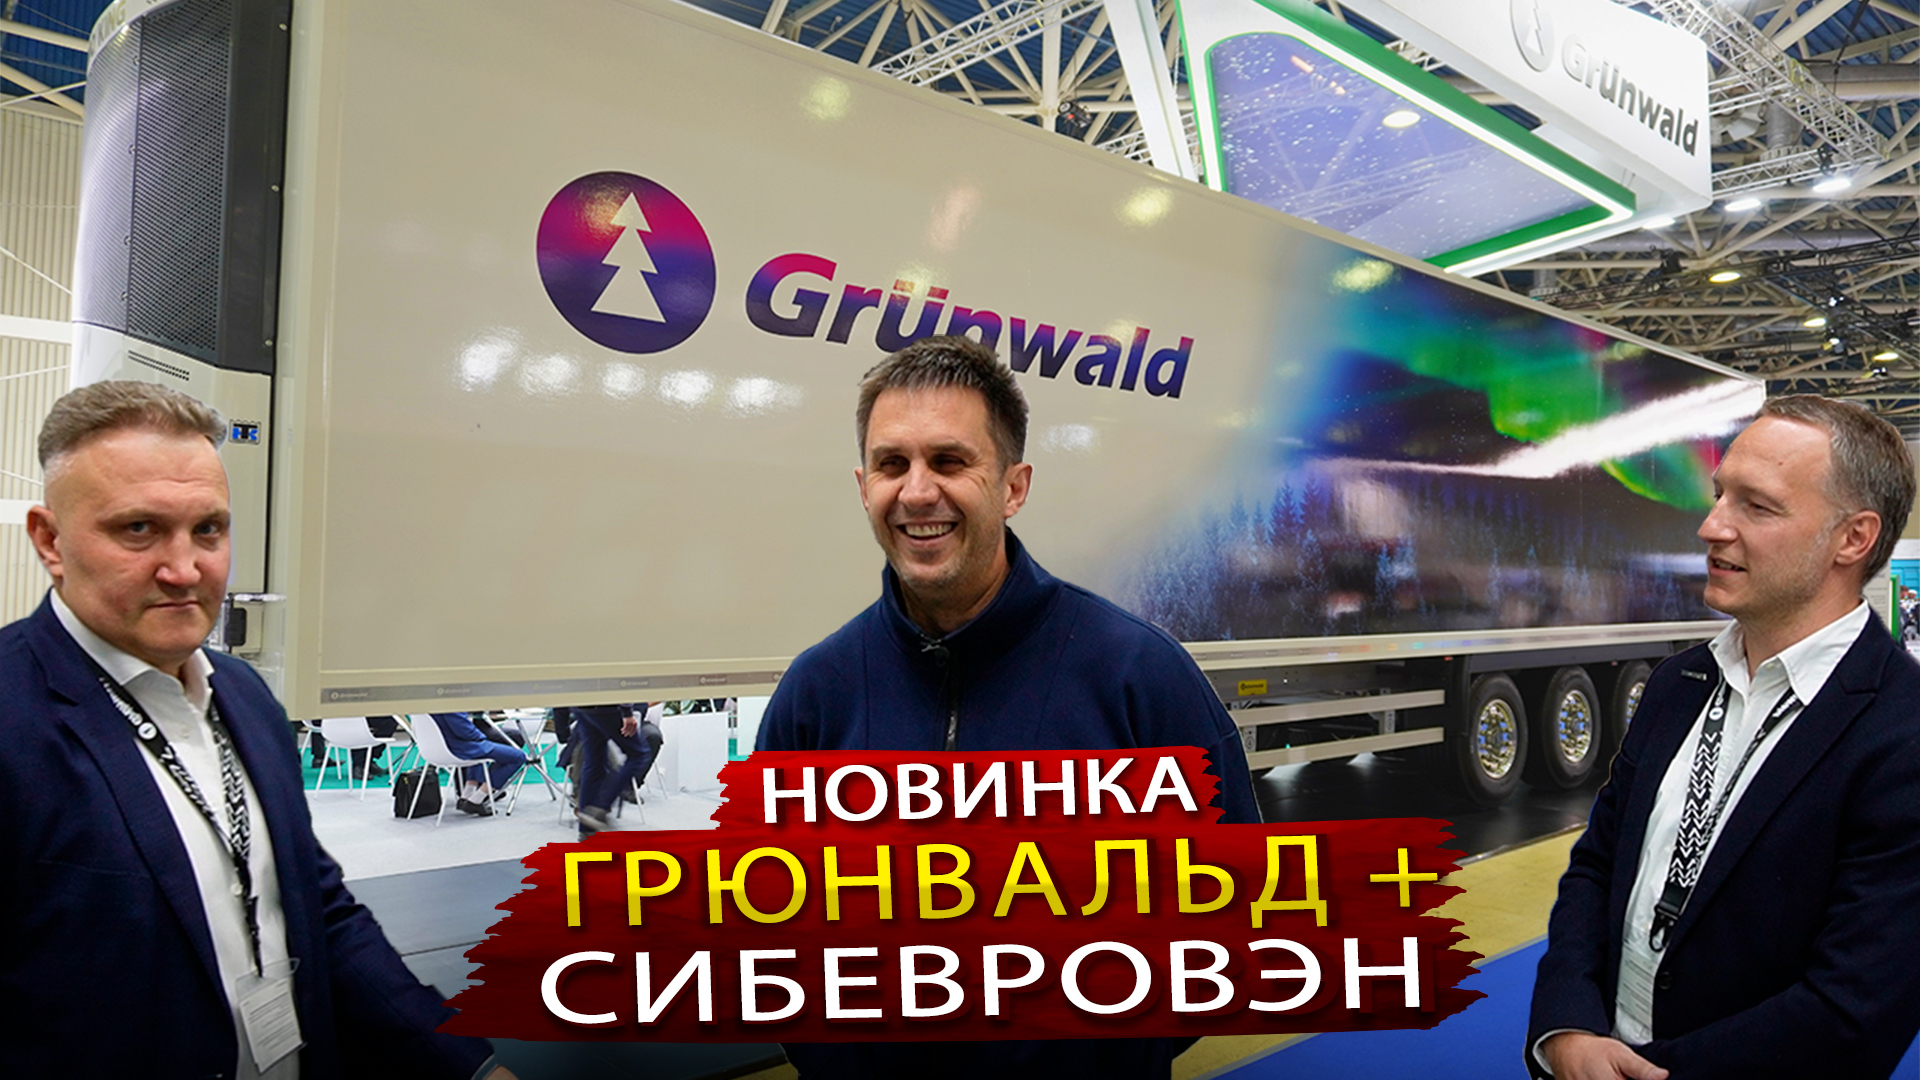 Грюнвальд + СибЕвроВэн - Два Российских завода объединили усилия при производстве полуприцепа РЕФ